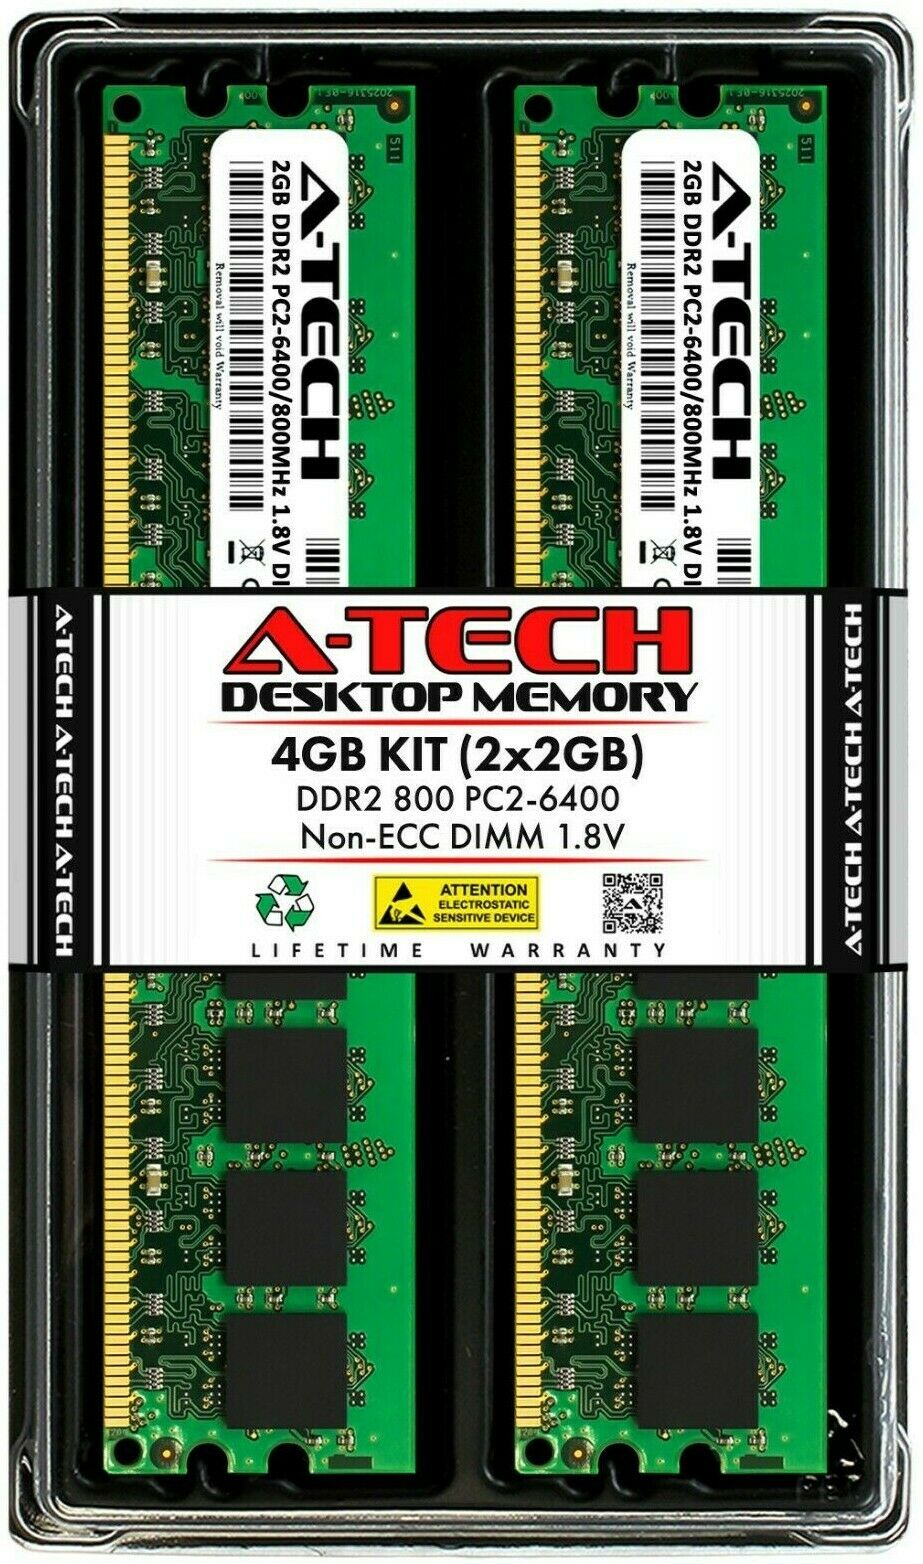 MEMORIA RAM A-TECH PAQUETE DE 2X2GB PC2-6400 DDR2 NON-ECC